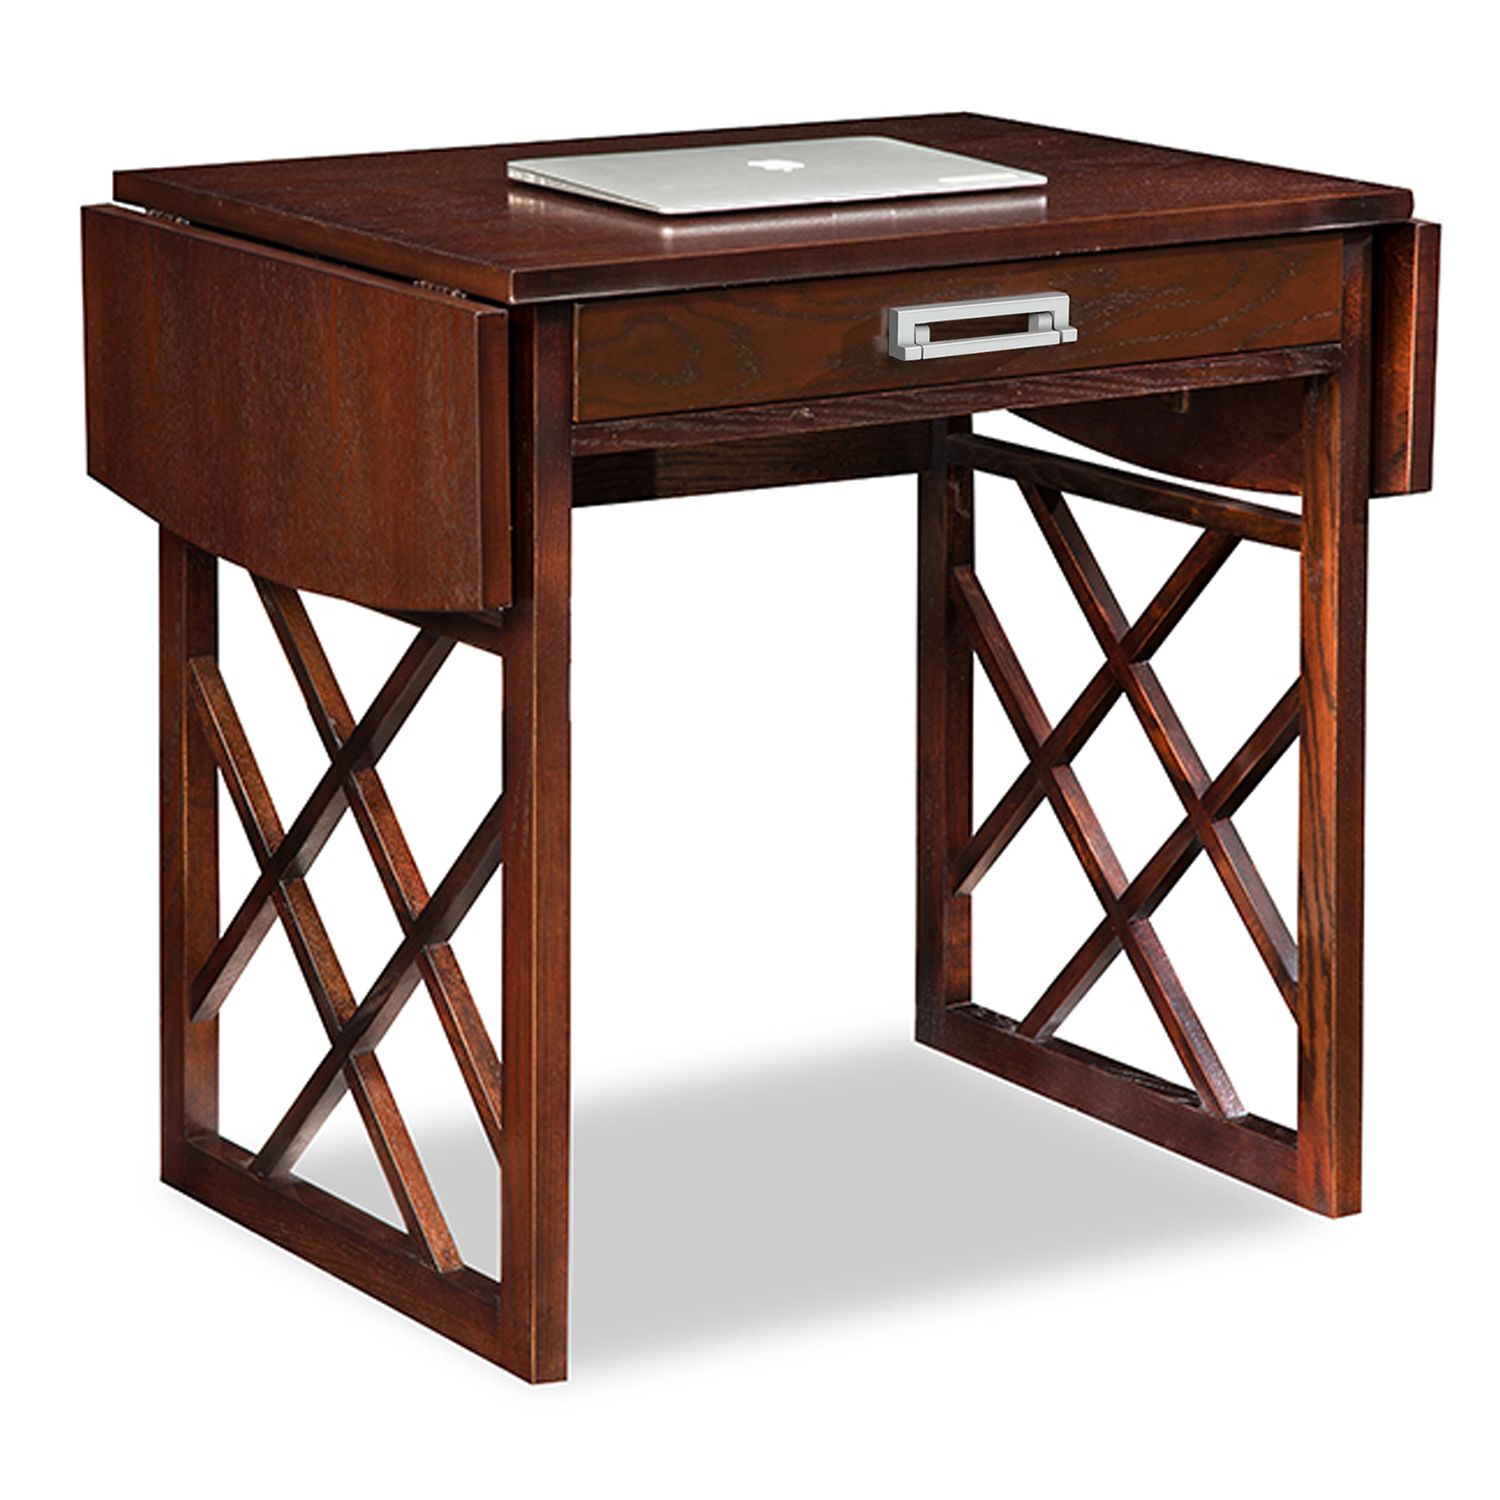 Image for Leick Furniture X-Frame Drop Leaf Desk at Kohl's.